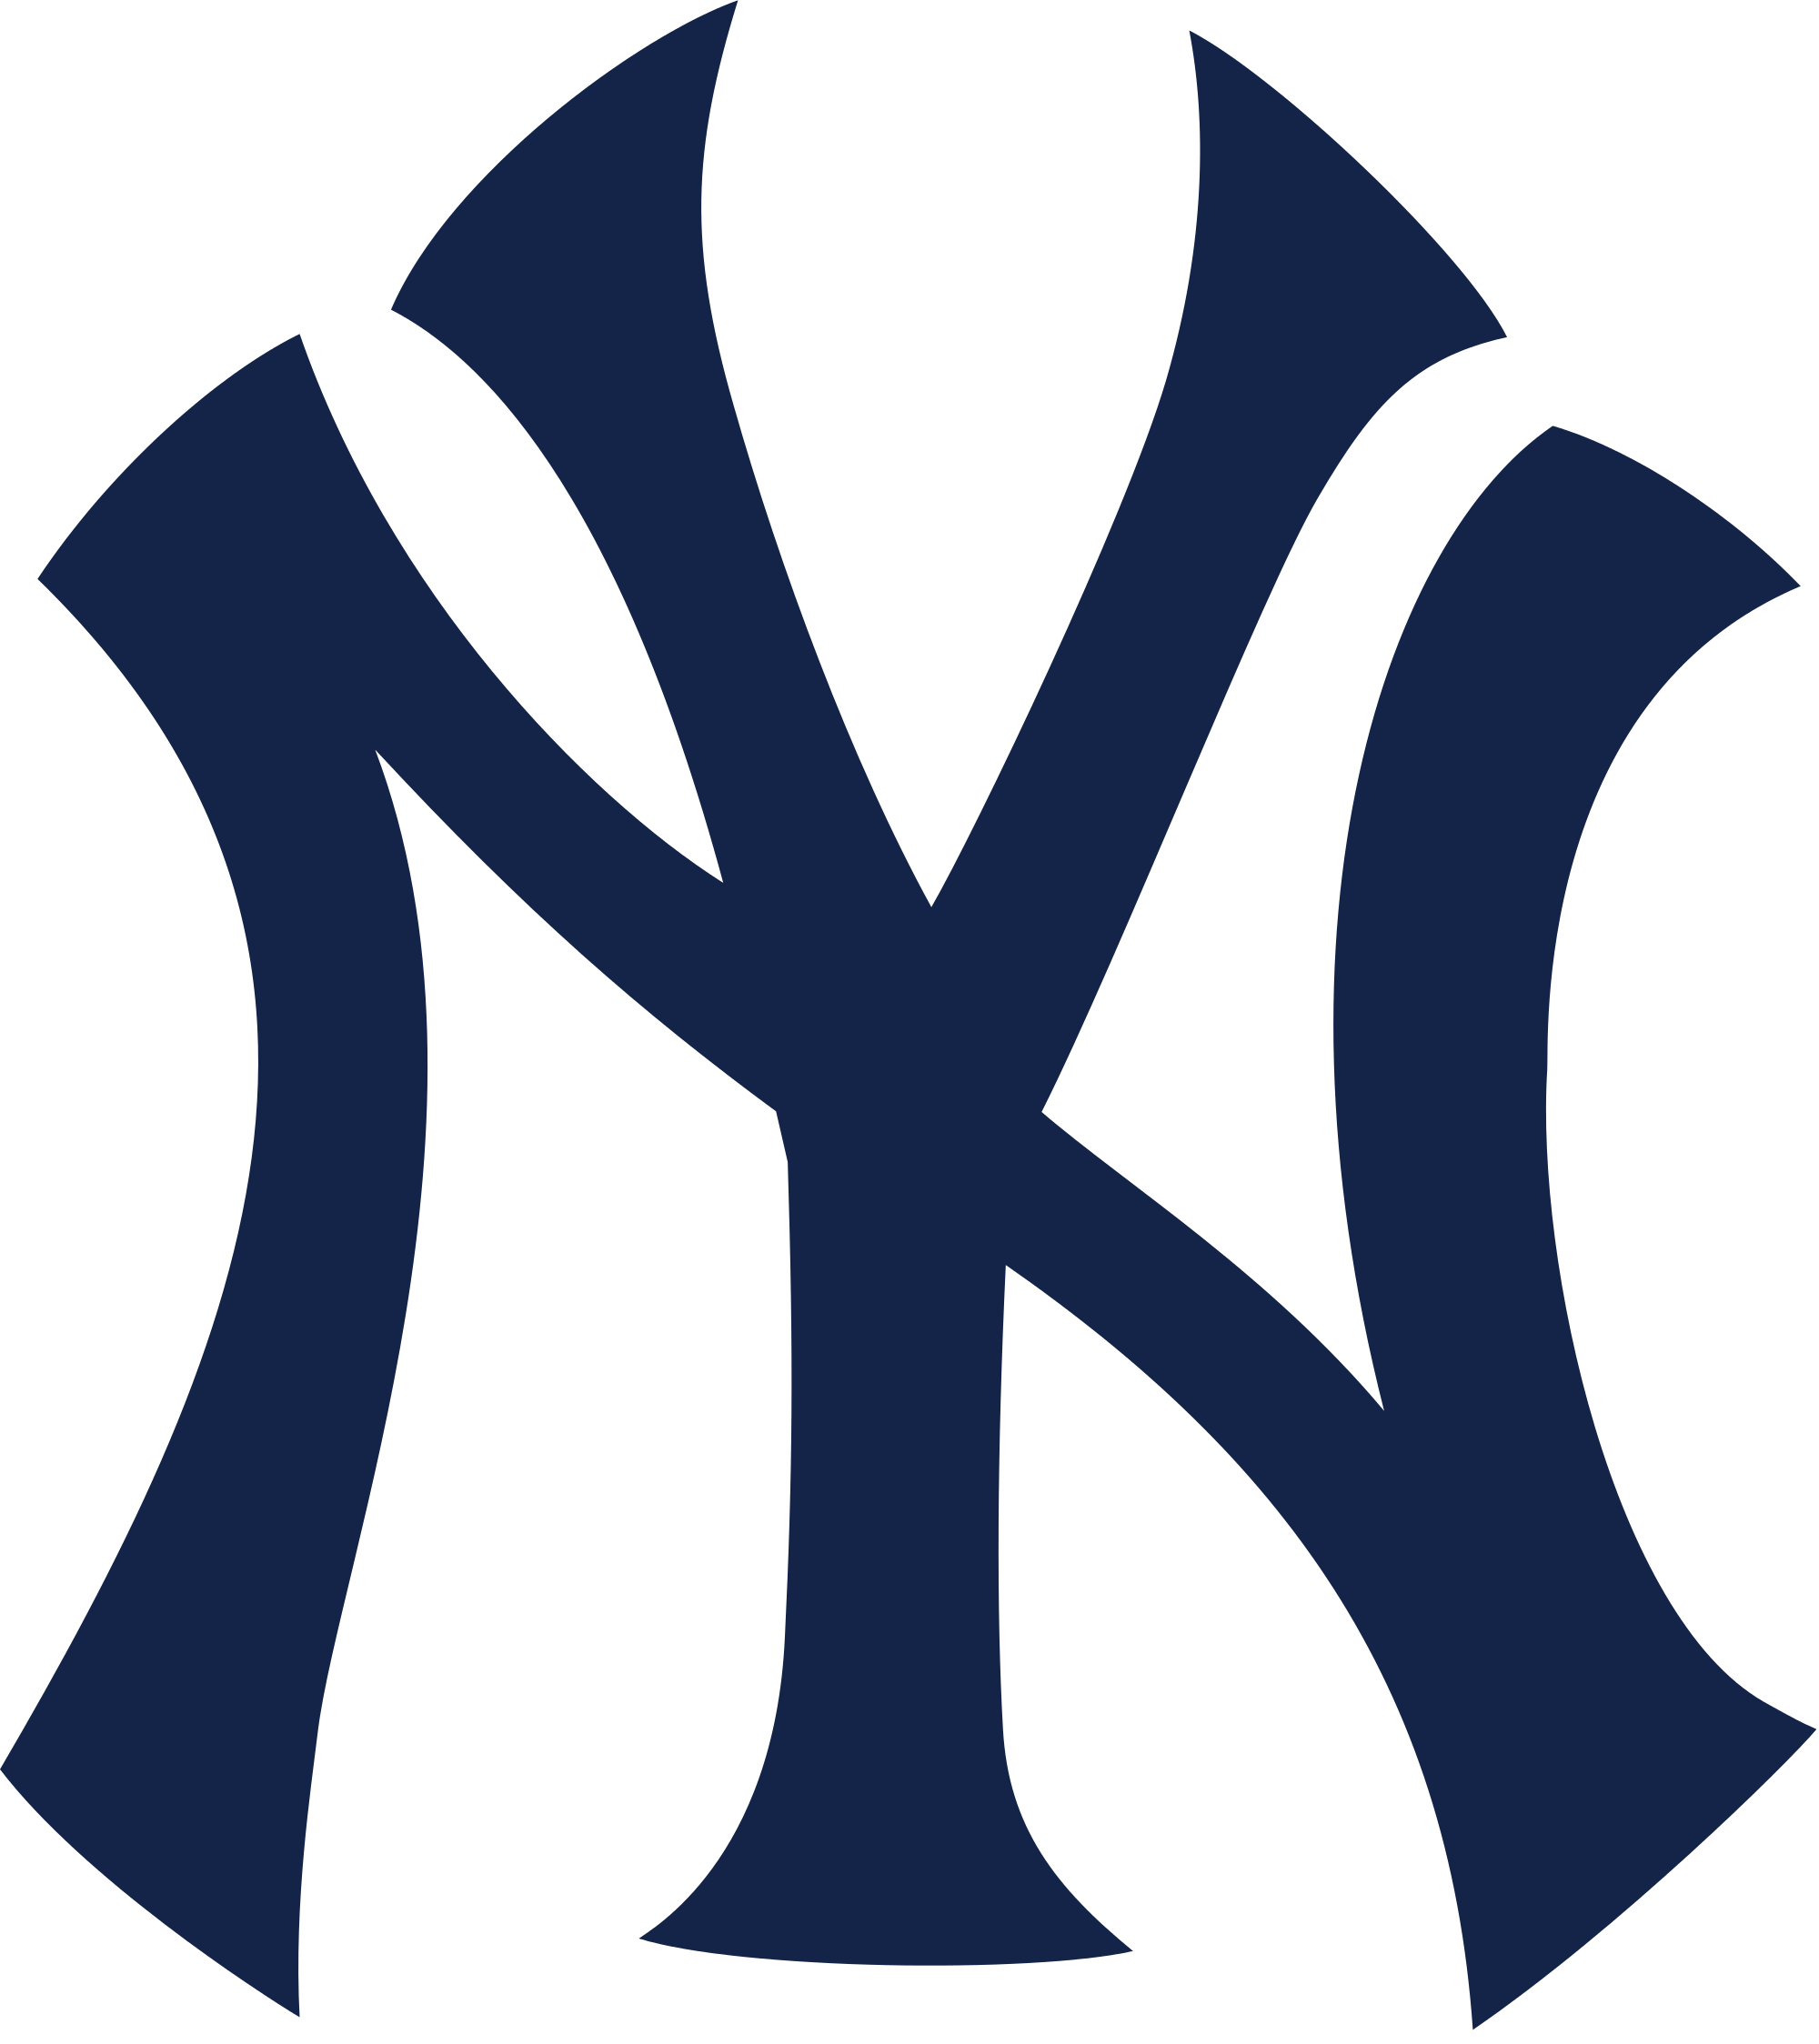 Ny Yankees Png Free Transpare